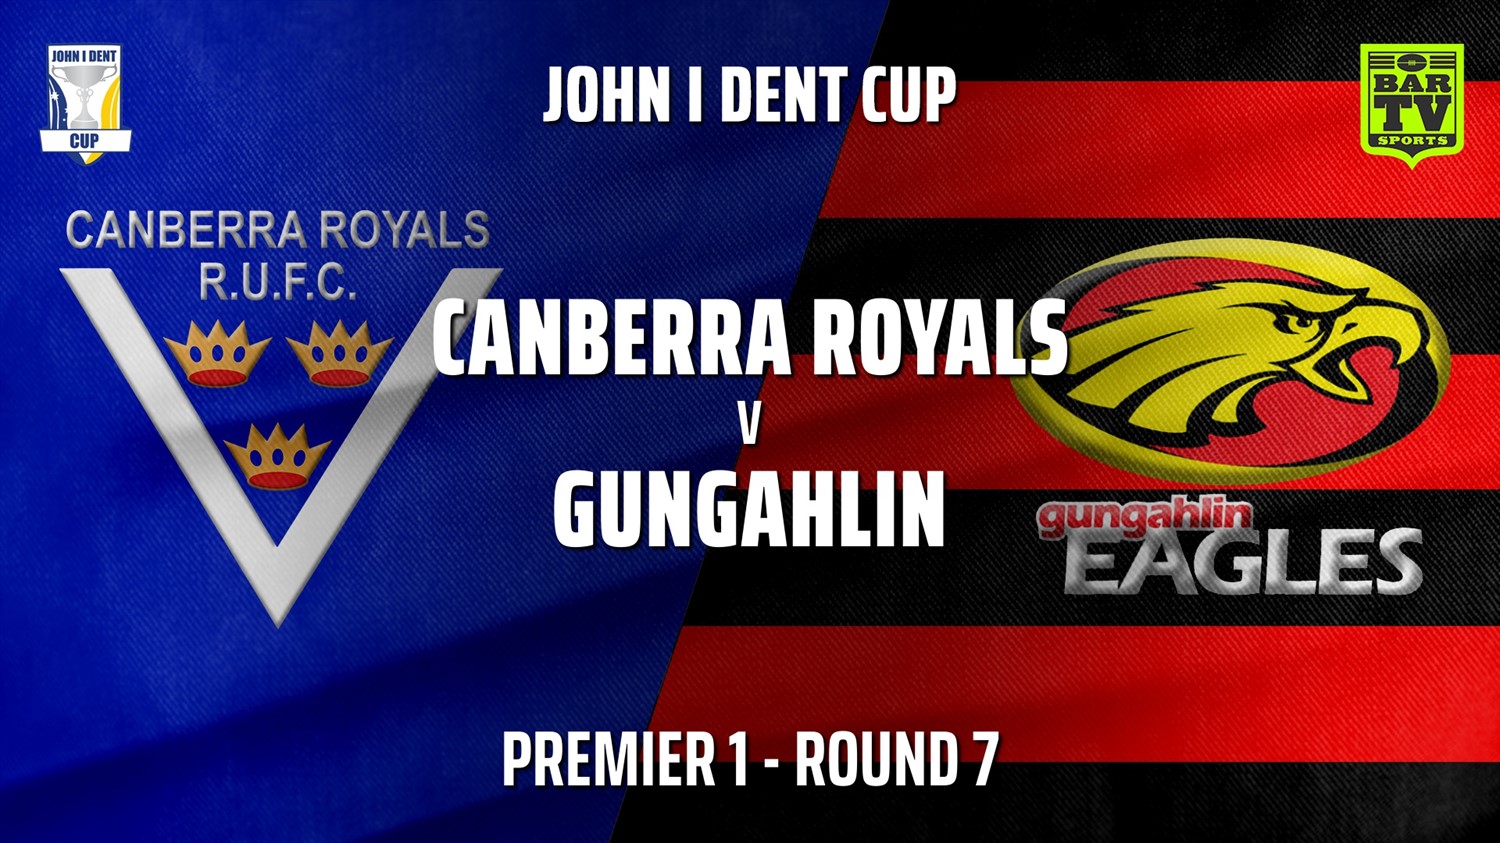 210605-John I Dent Round 7 - Premier 1 - Canberra Royals v Gungahlin Eagles Minigame Slate Image